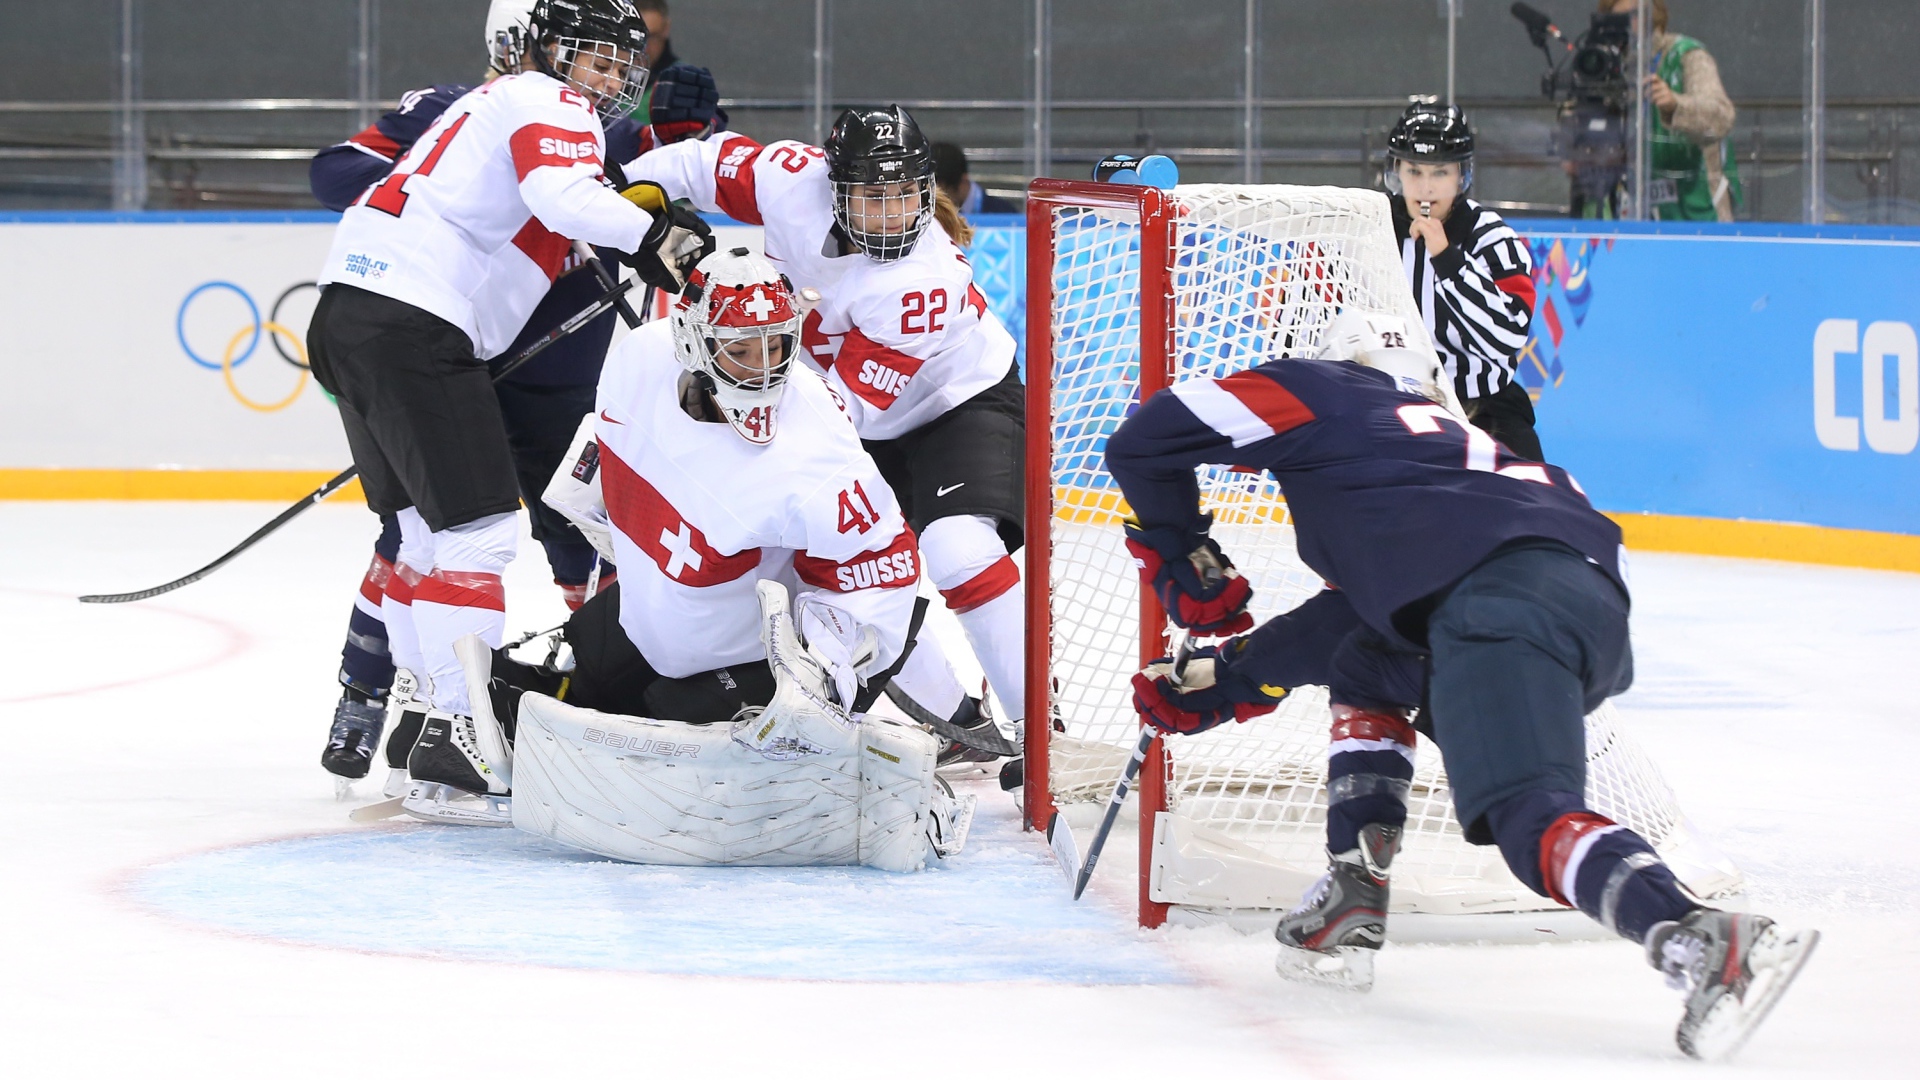 Обладательницы бронзовой медали хоккеистки из Швейцарии на олимпиаде в Сочи